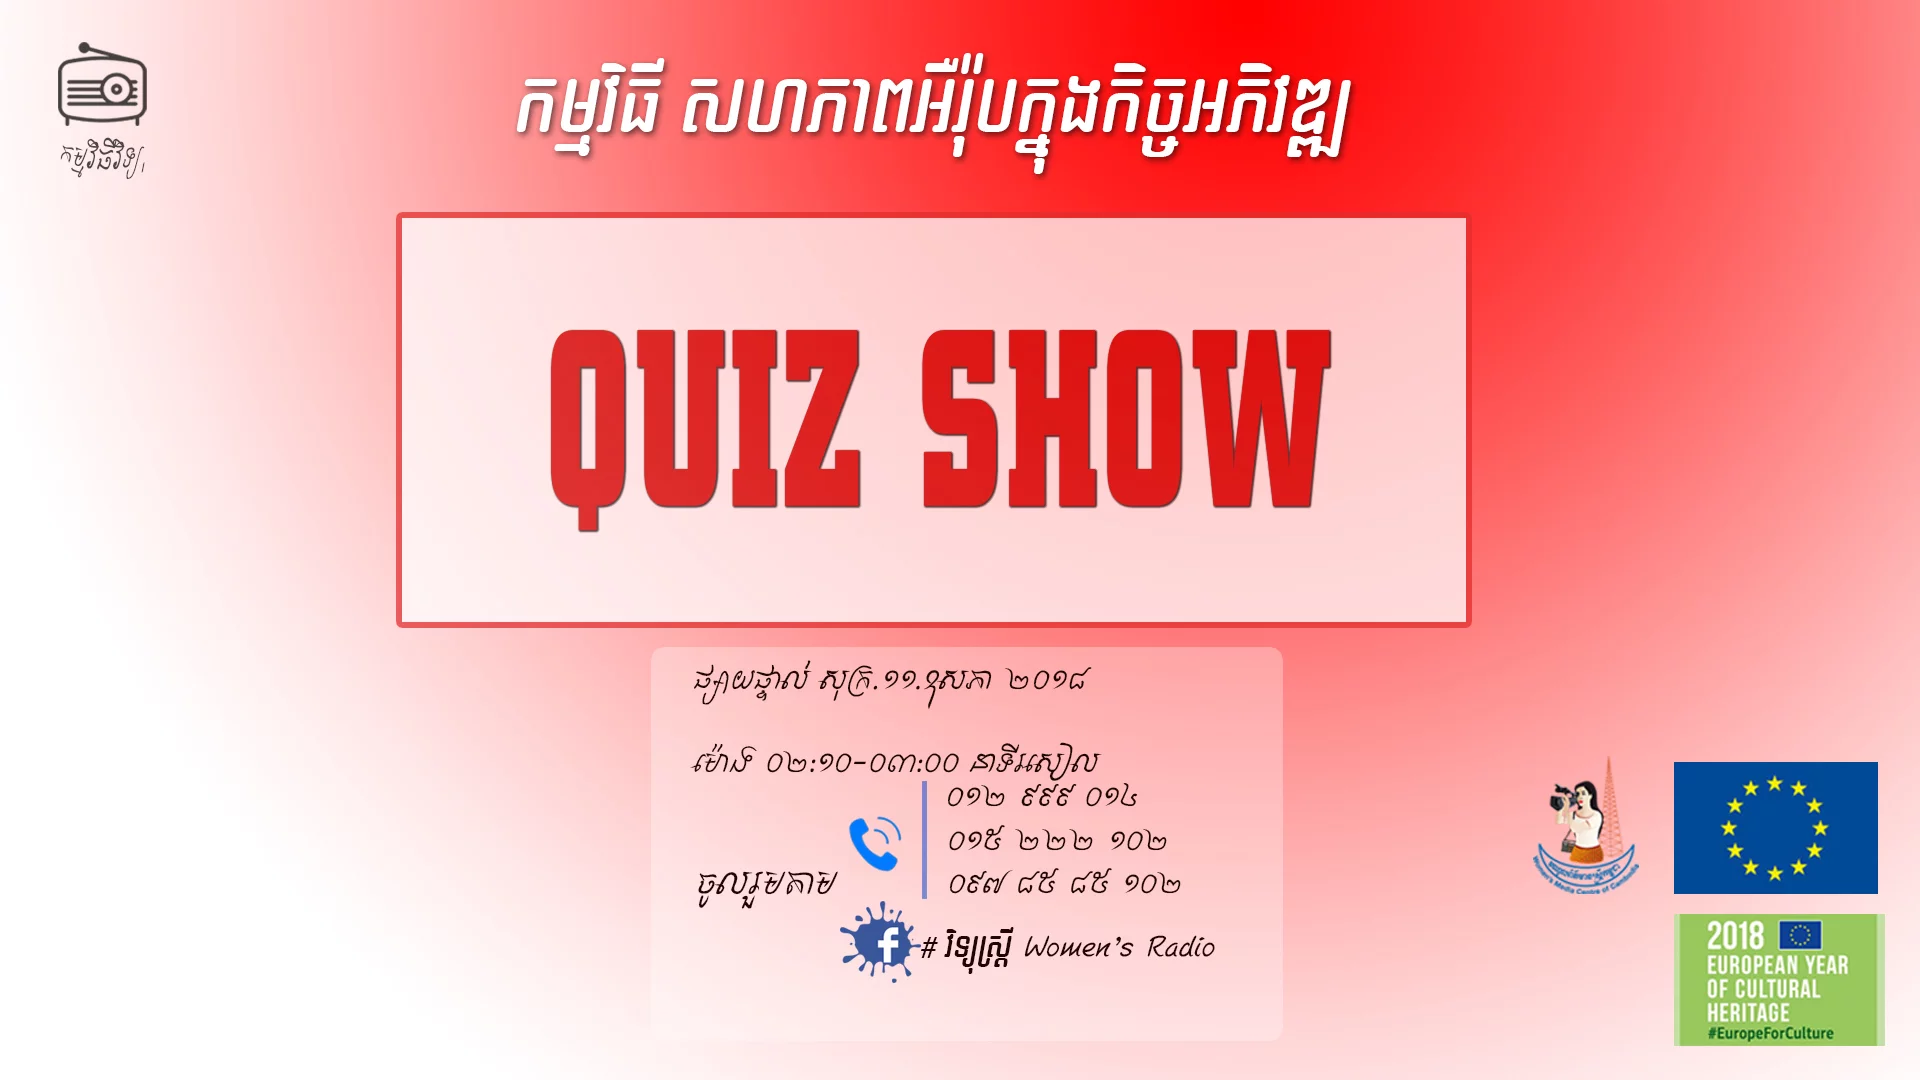 Promote-FB-EU-Pro11-Quiz-Show.jpg